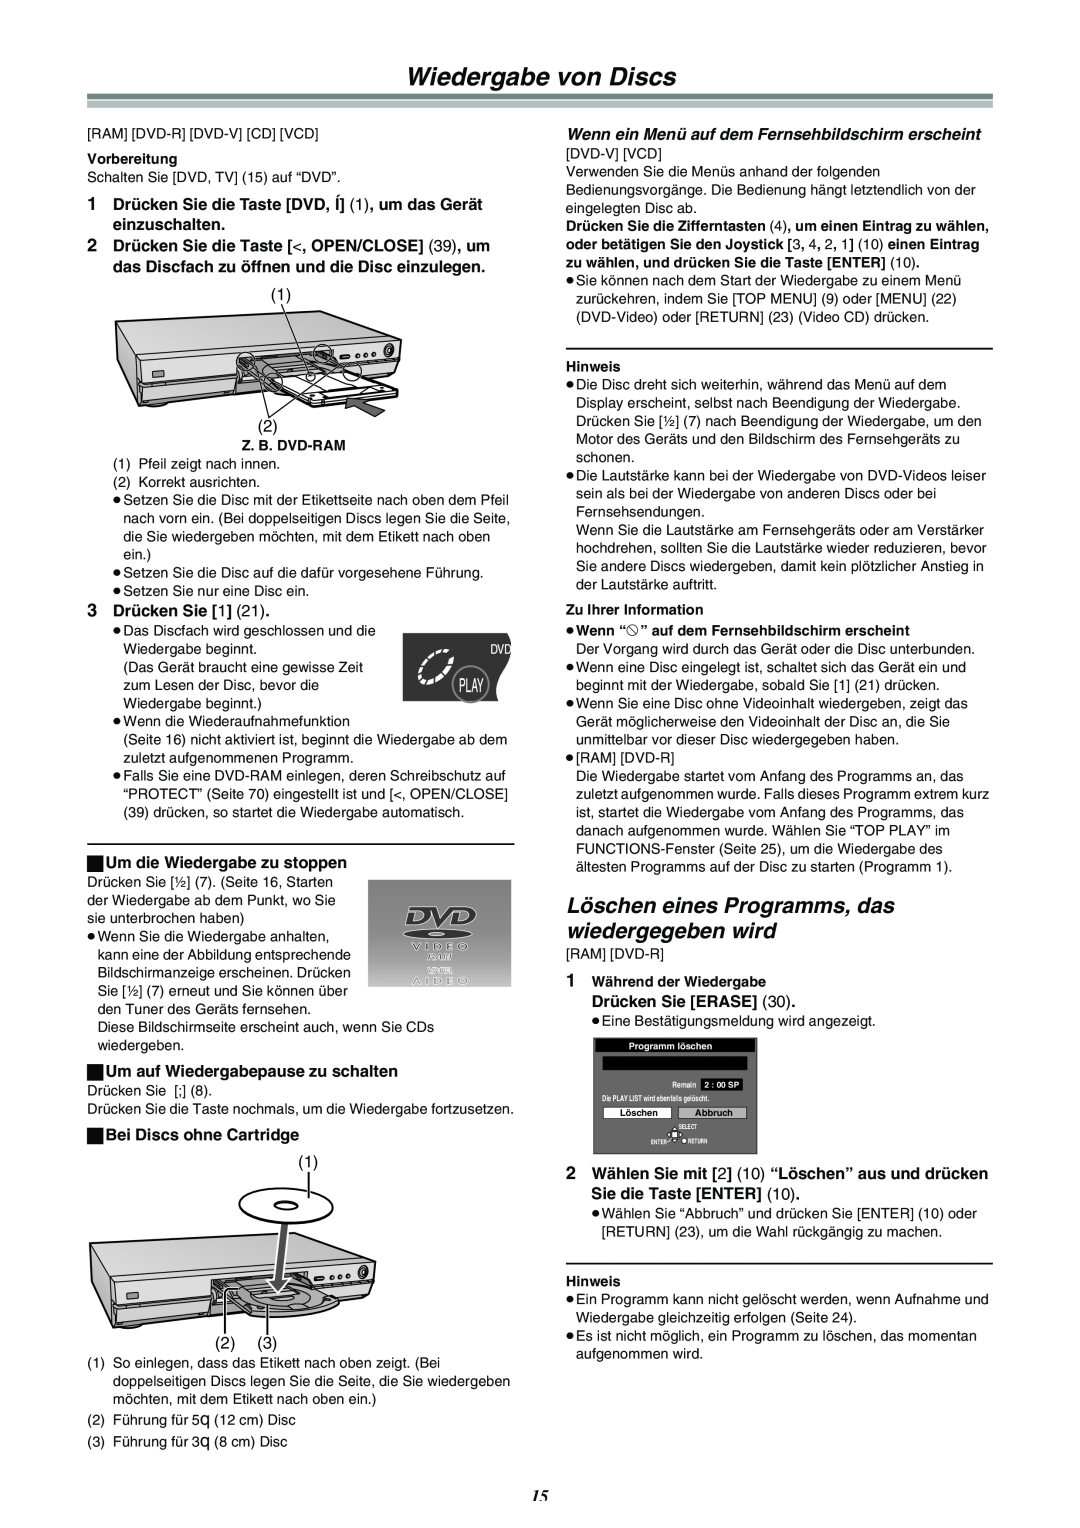 Panasonic DMR-E30 manual Wiedergabe von Discs, Löschen eines Programms, das wiedergegeben wird 